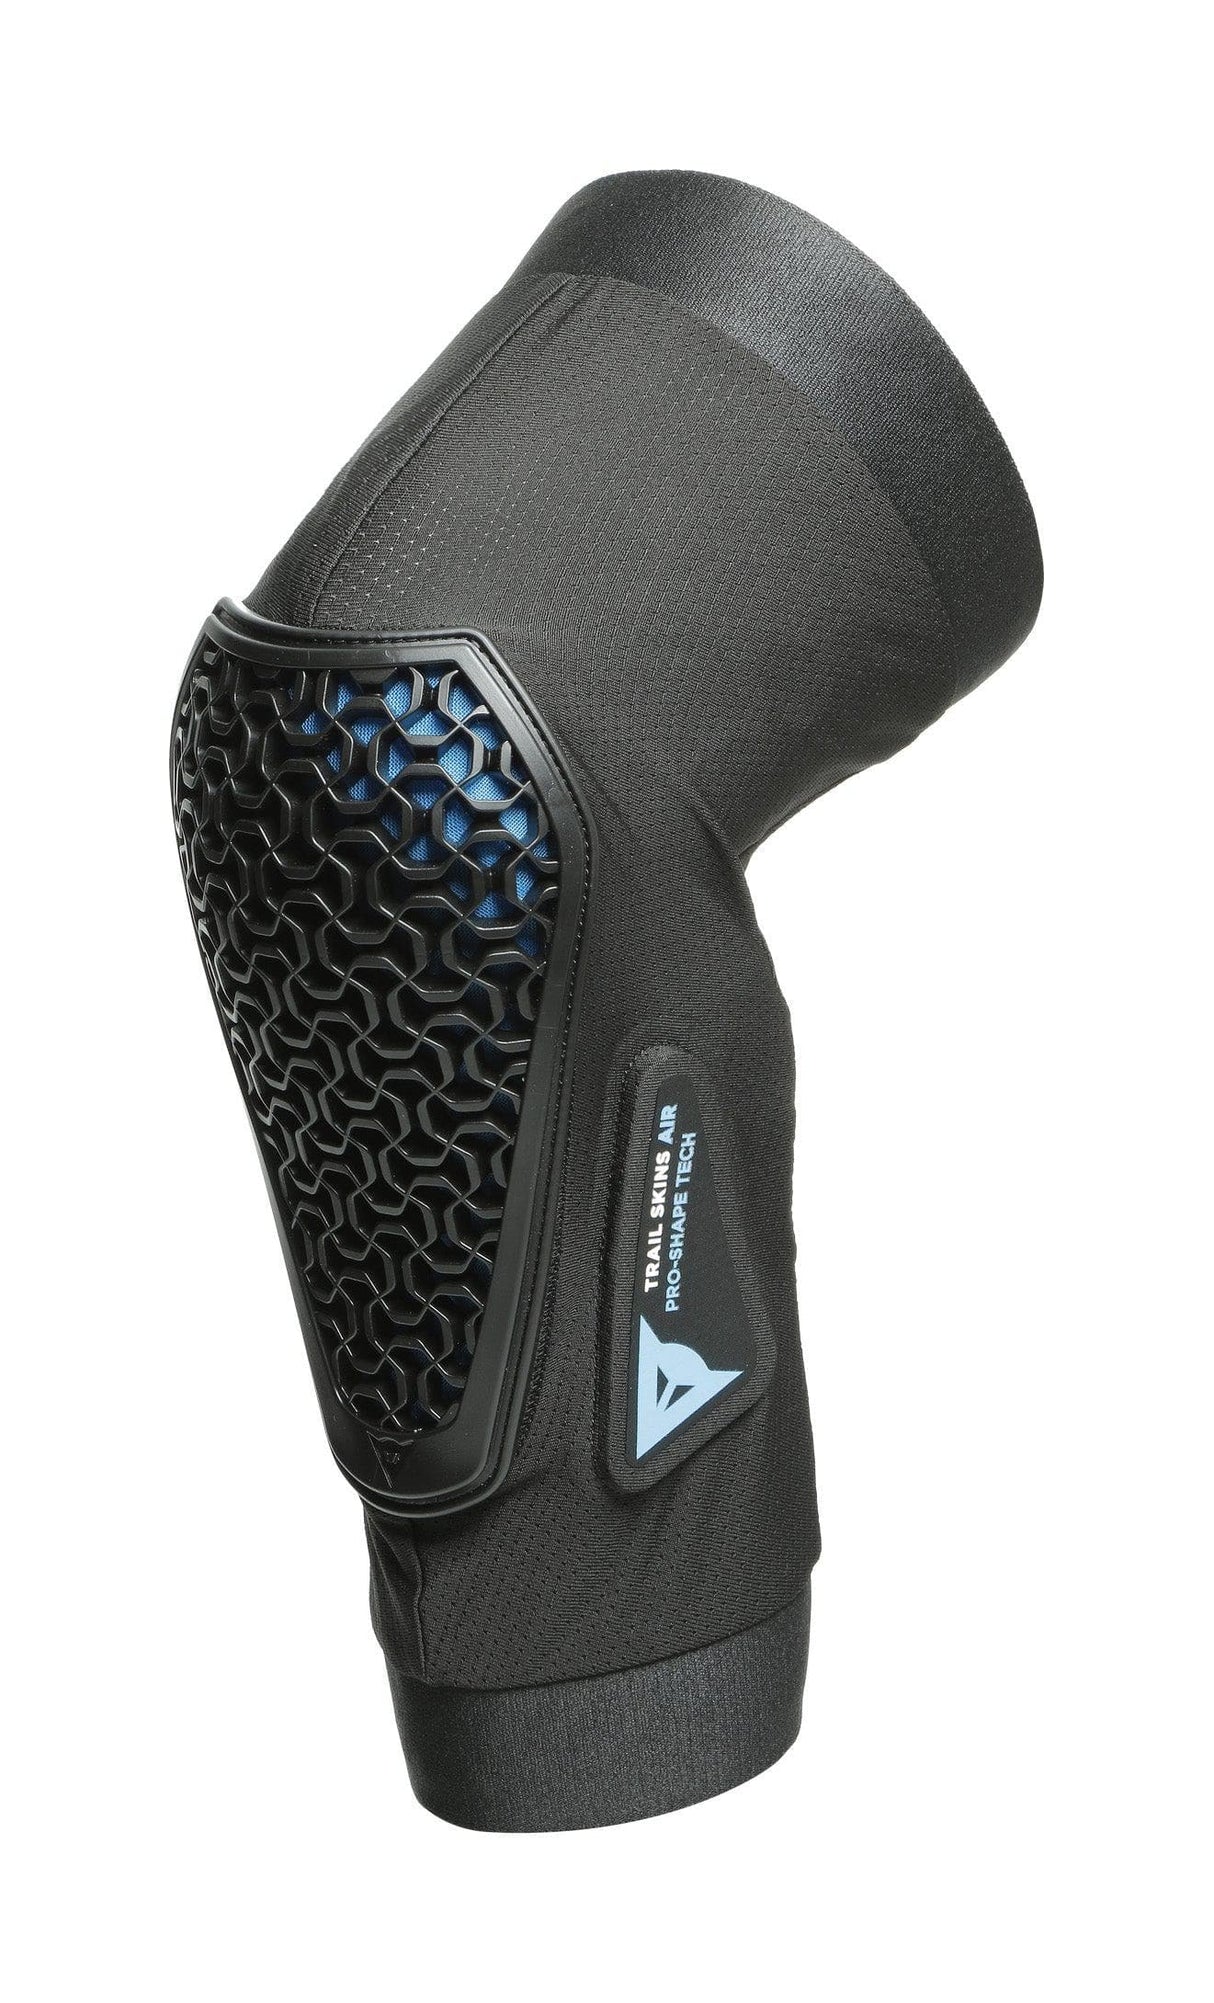 Dainese Trail Skins Air Knee Guard (Black, XL)